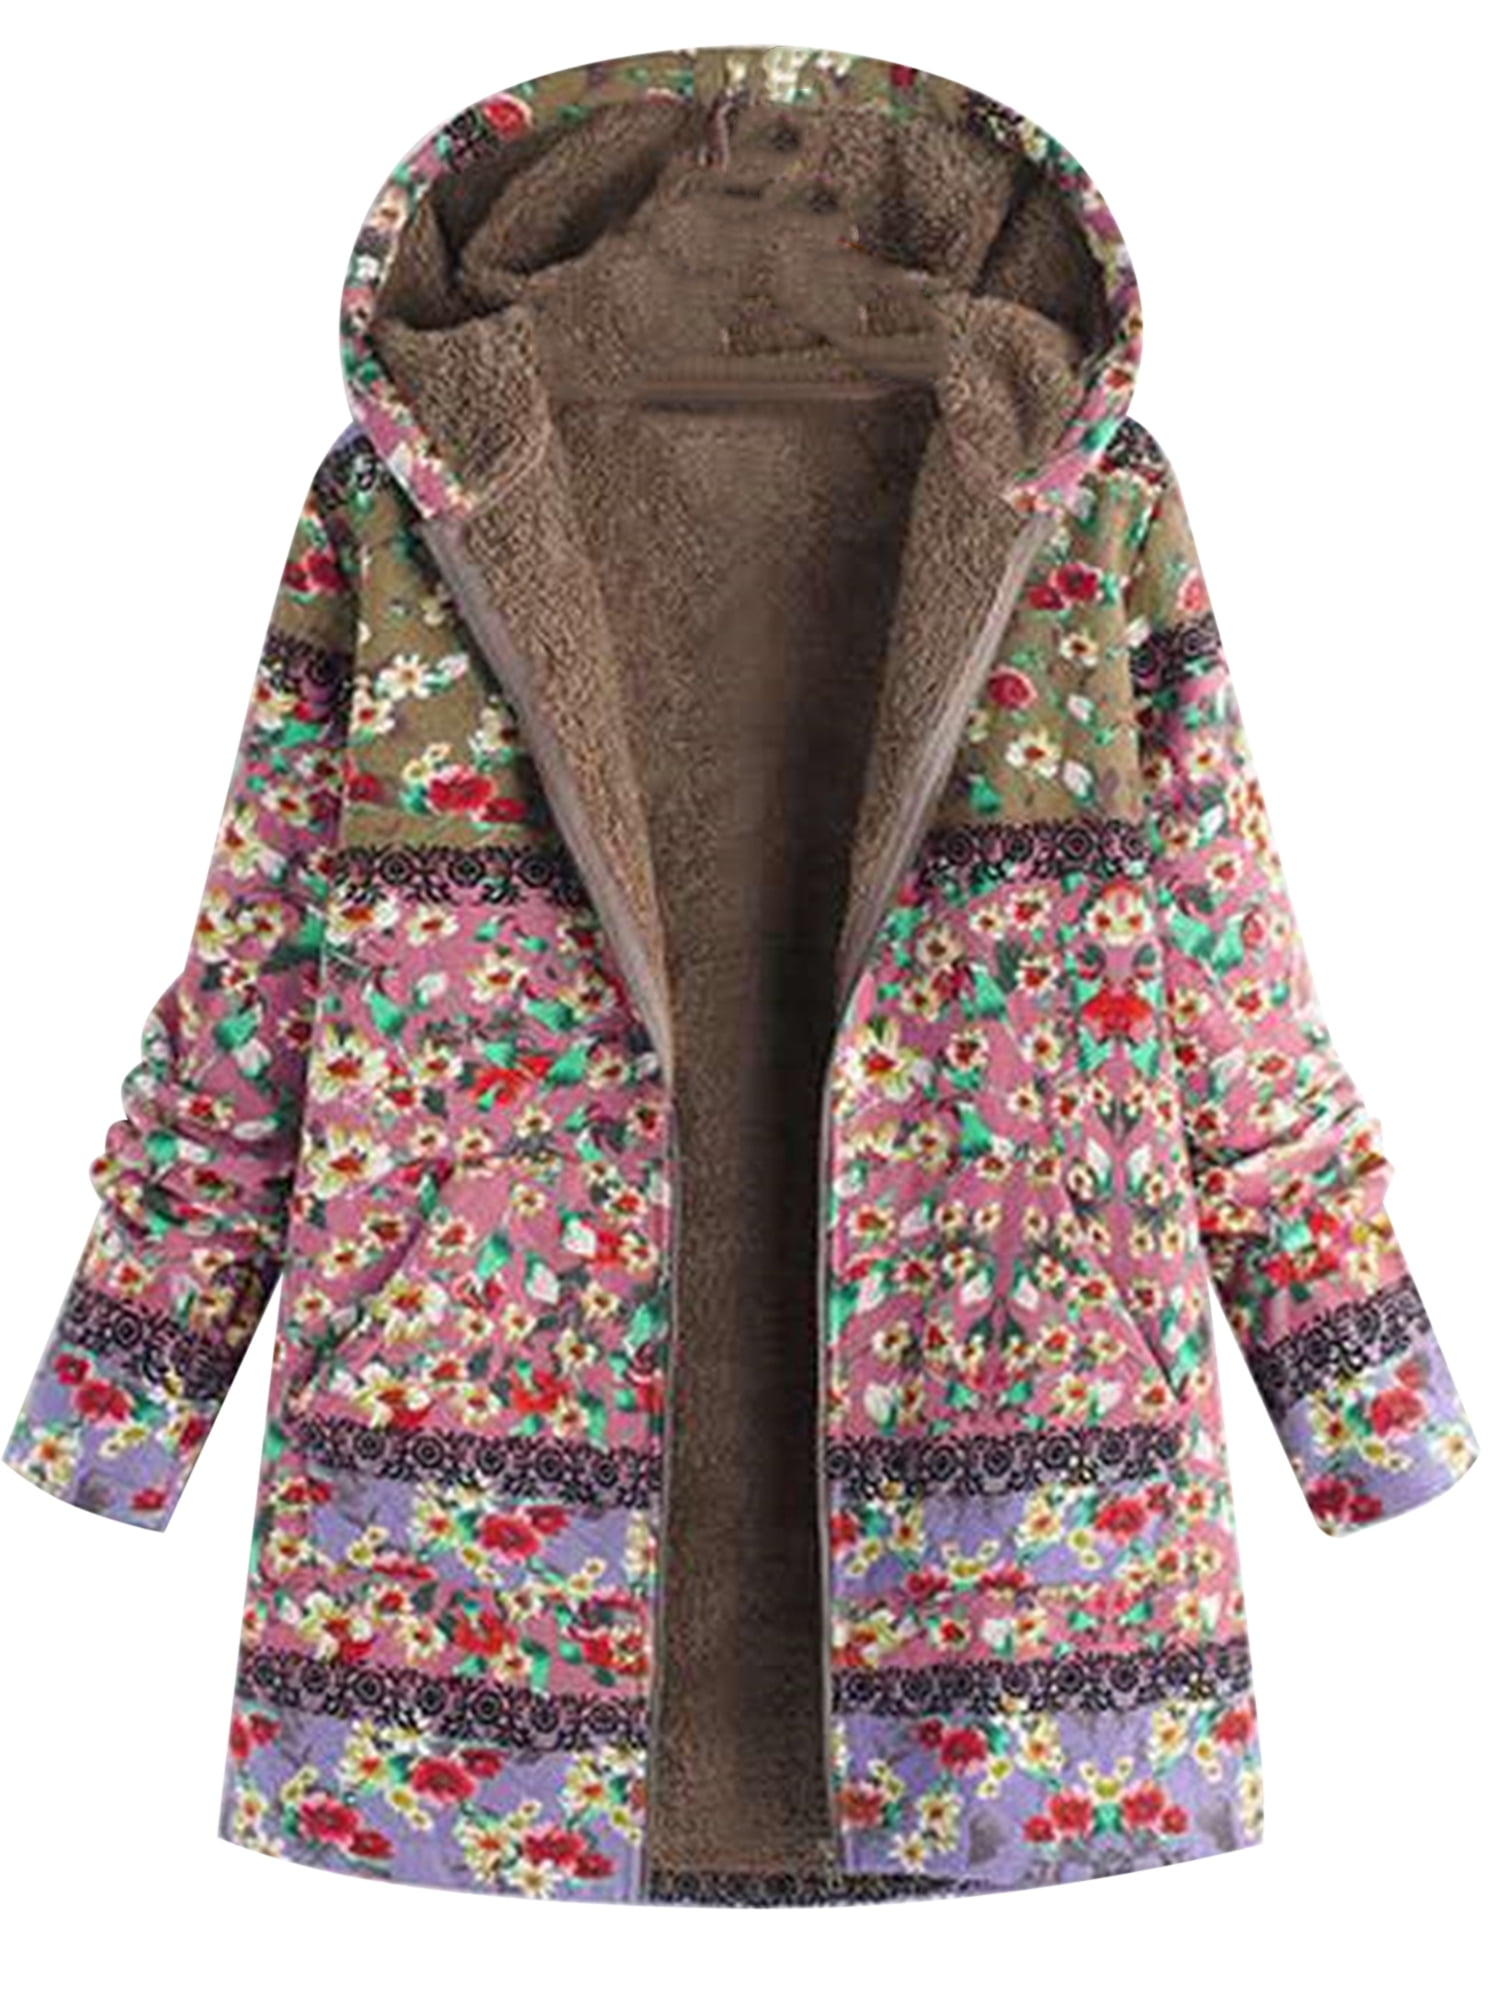 Women Winter Warm Fleece Lined Hooded Jacket Parka Floral Coat Jacket Outwear